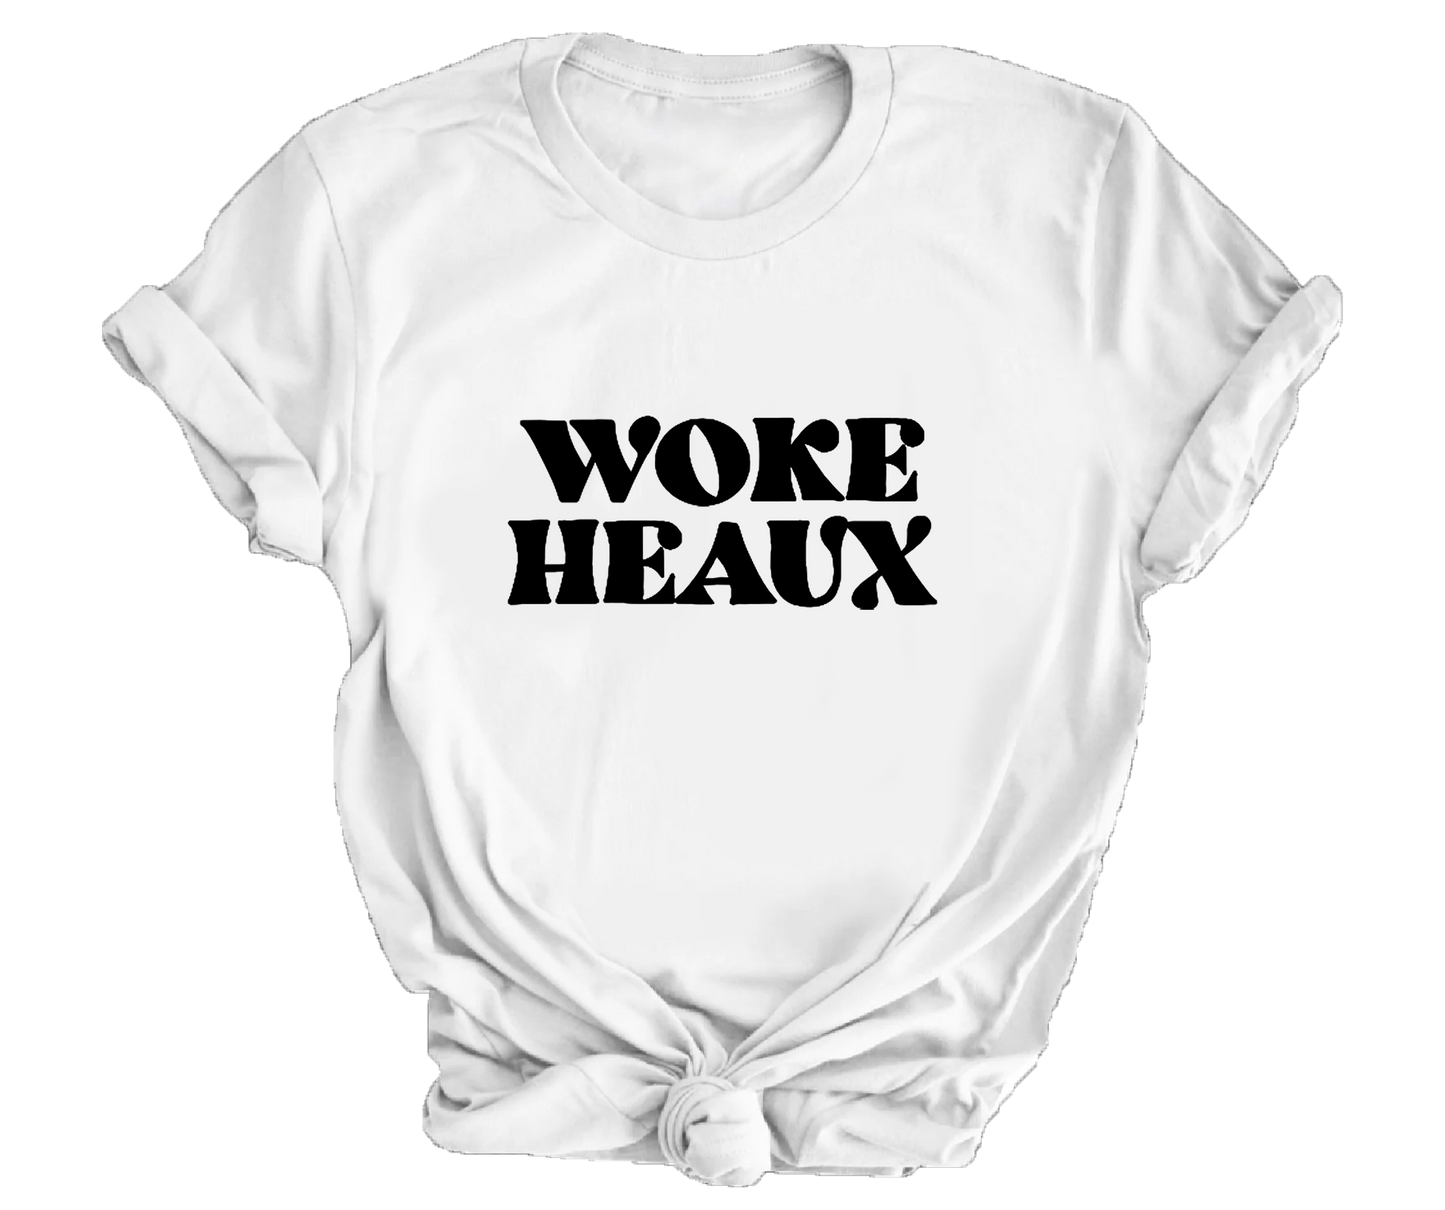 Woke Heaux T-Shirt